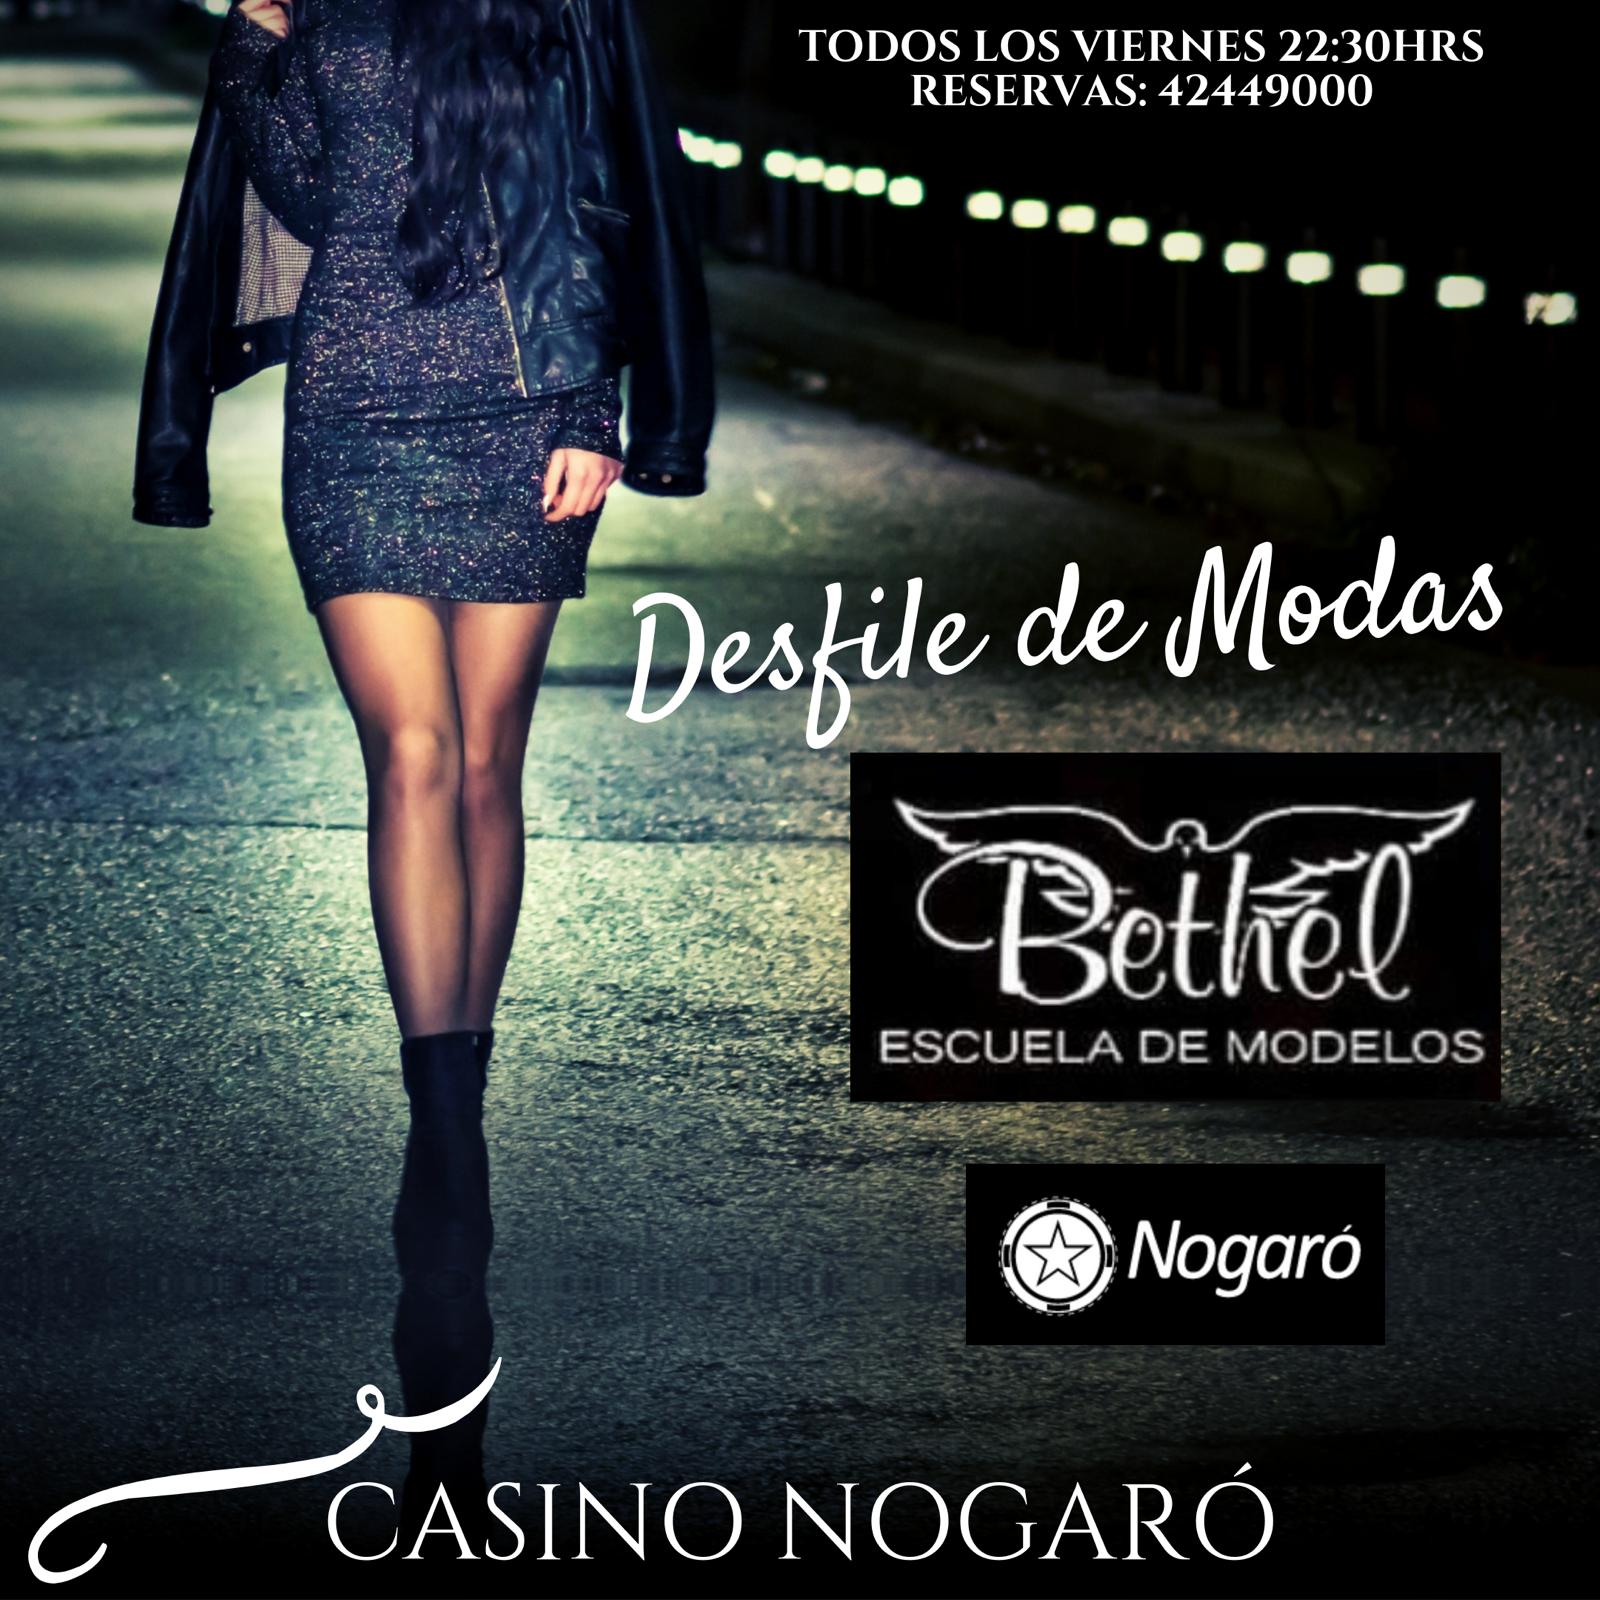 Casino Nogaró apuesta a la moda junto a la Escuela de Modelos Bethel